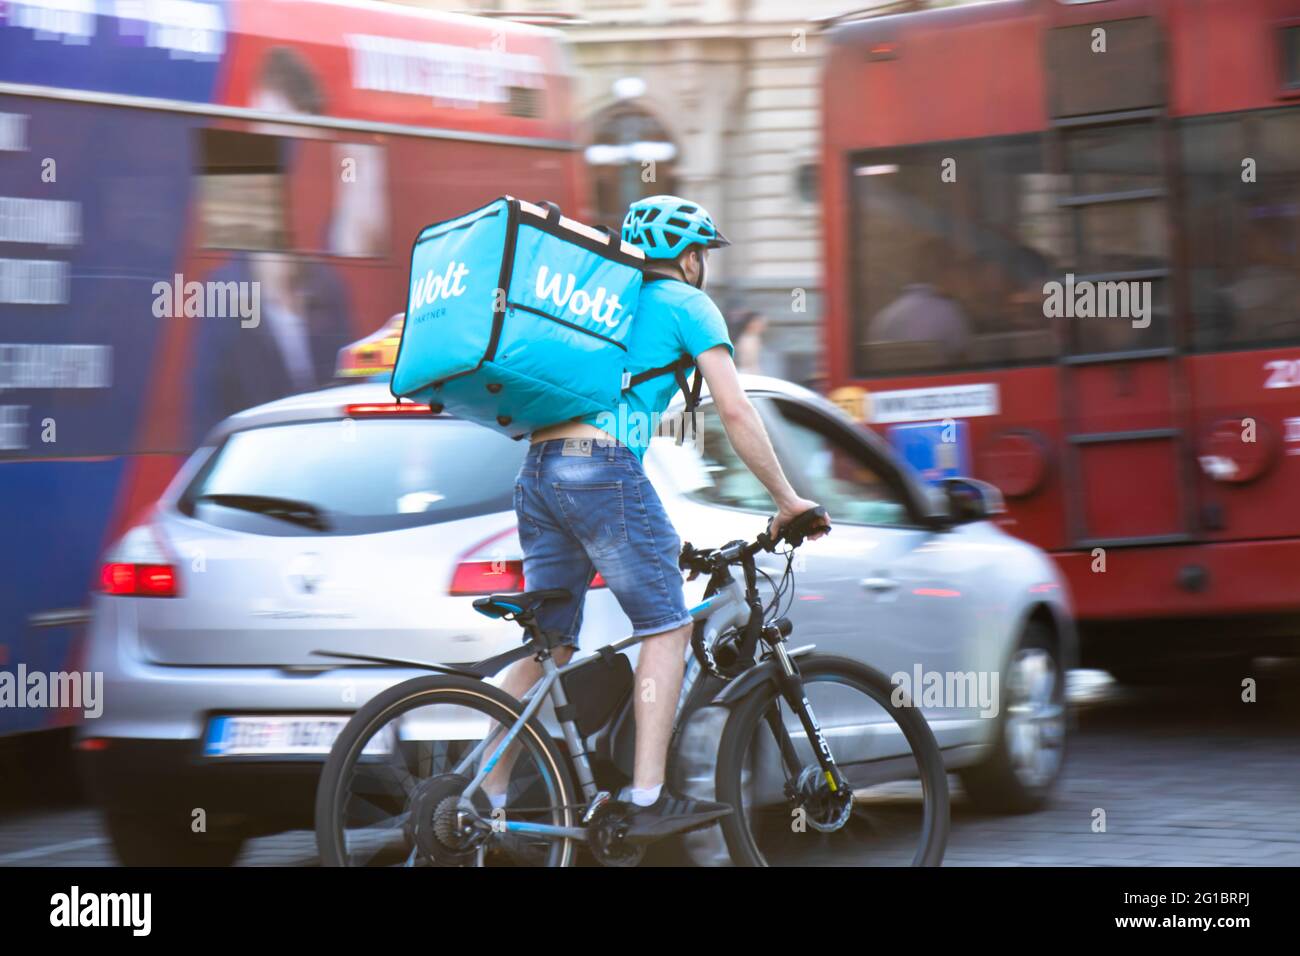 Belgrad, Serbien - 5. Juni 2021: Wolt Food Delivery Service Kurier auf dem Fahrrad im belebten Stadtverkehr Stockfoto